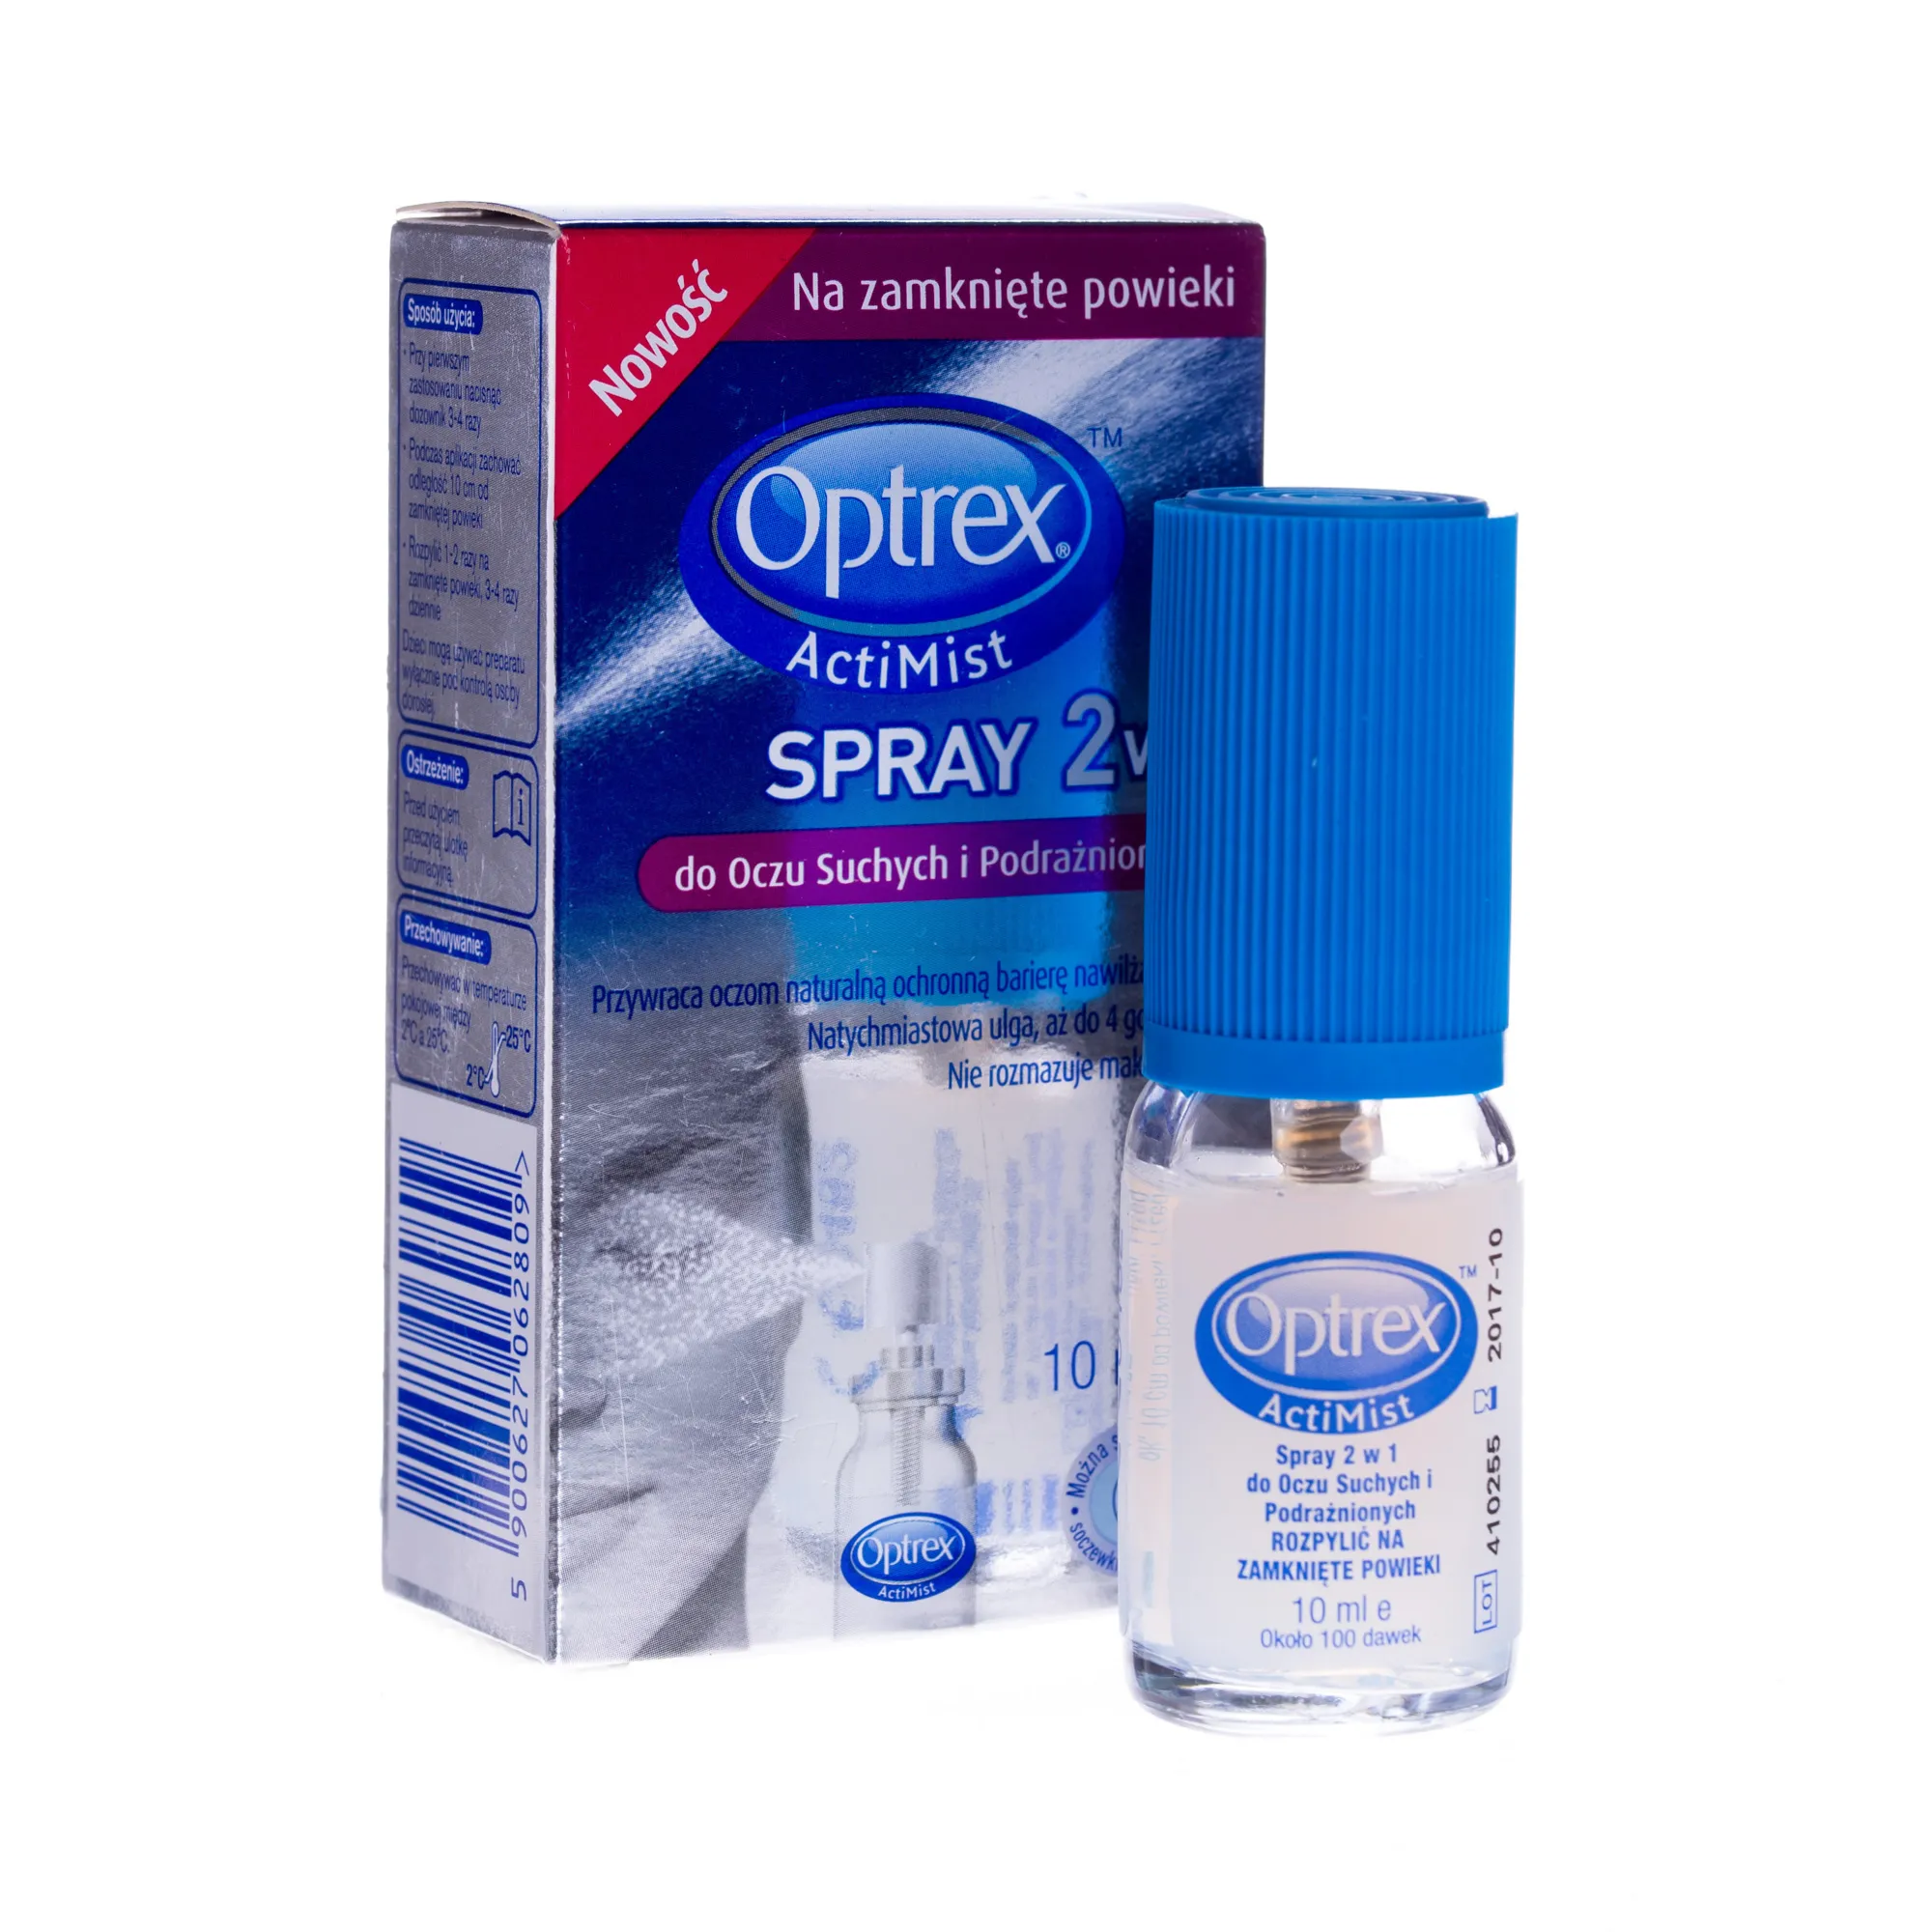 Optrex ActiMist, spray 2 w 1 do oczu suchych i podrażnionych, 10 ml